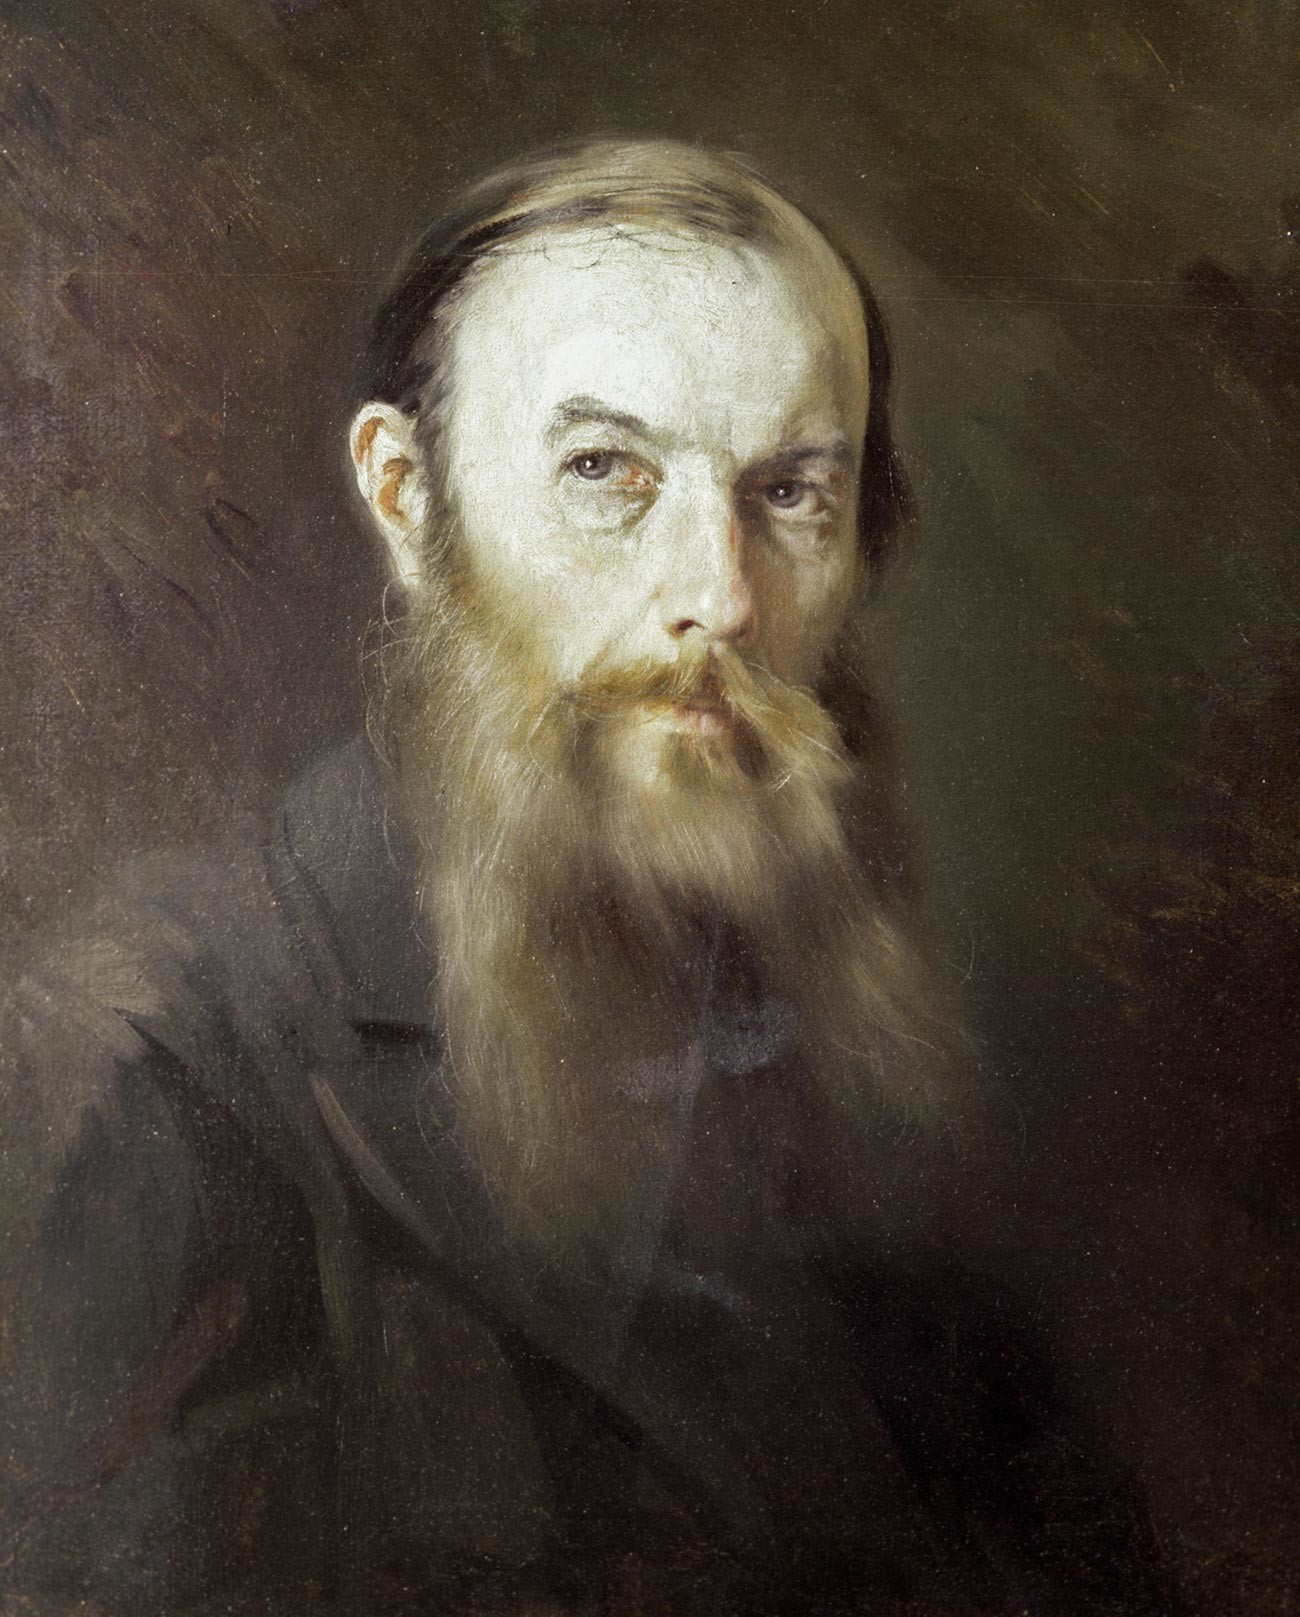 Reproduktion des Porträts von Fjodor Dostojewski von M. Schtscherbatow.